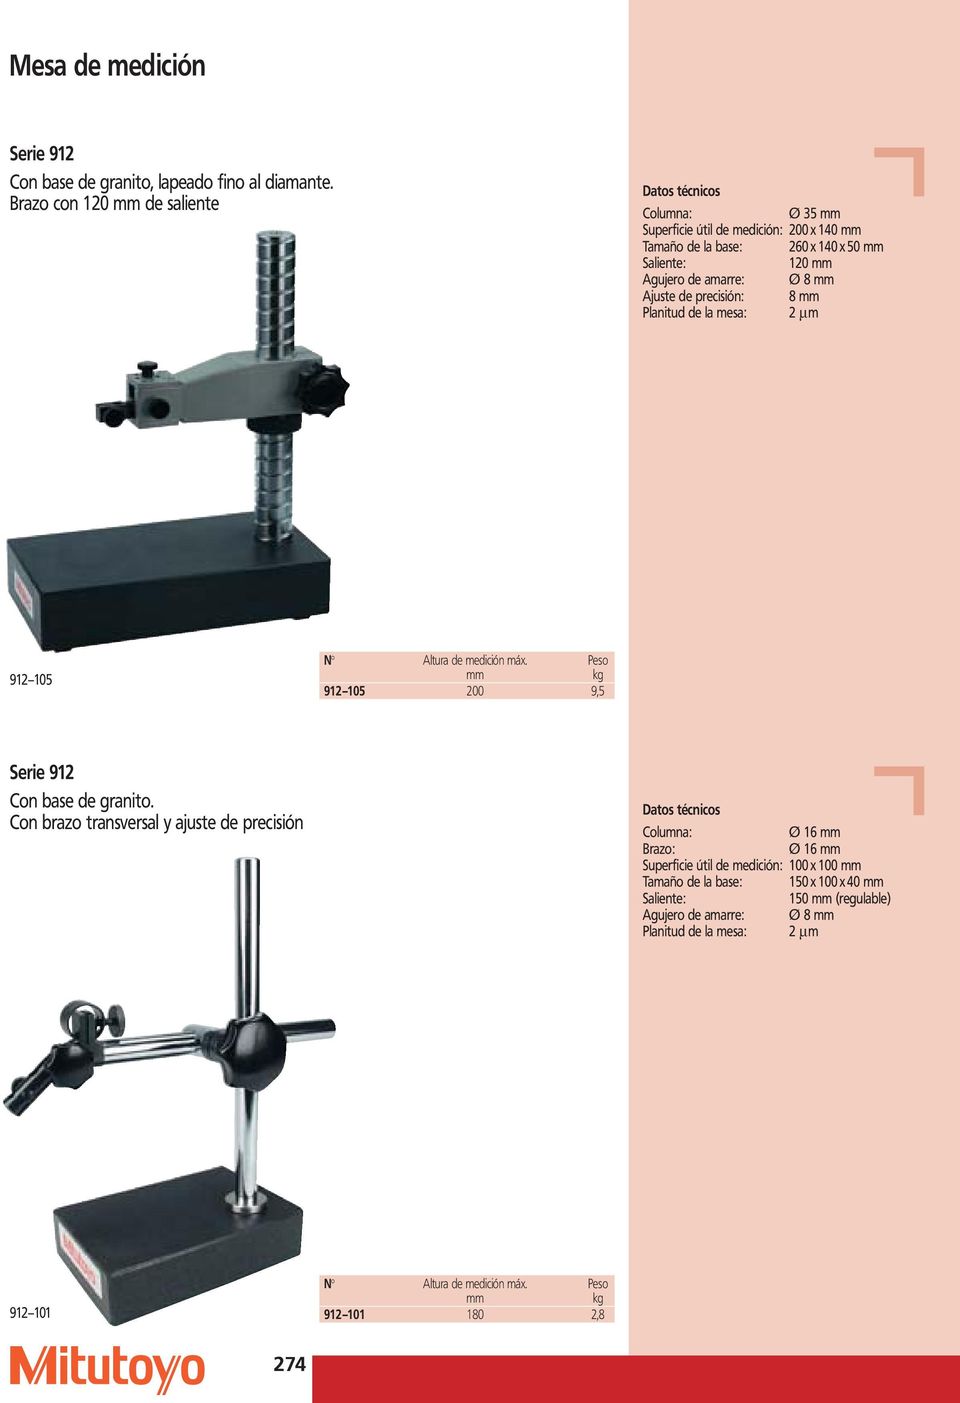 precisión: 8 mm Planitud de la mesa: 2 mm 912 105 N Altura de medición máx. Peso mm kg 912 105 200 9,5 Serie 912 Con base de granito.